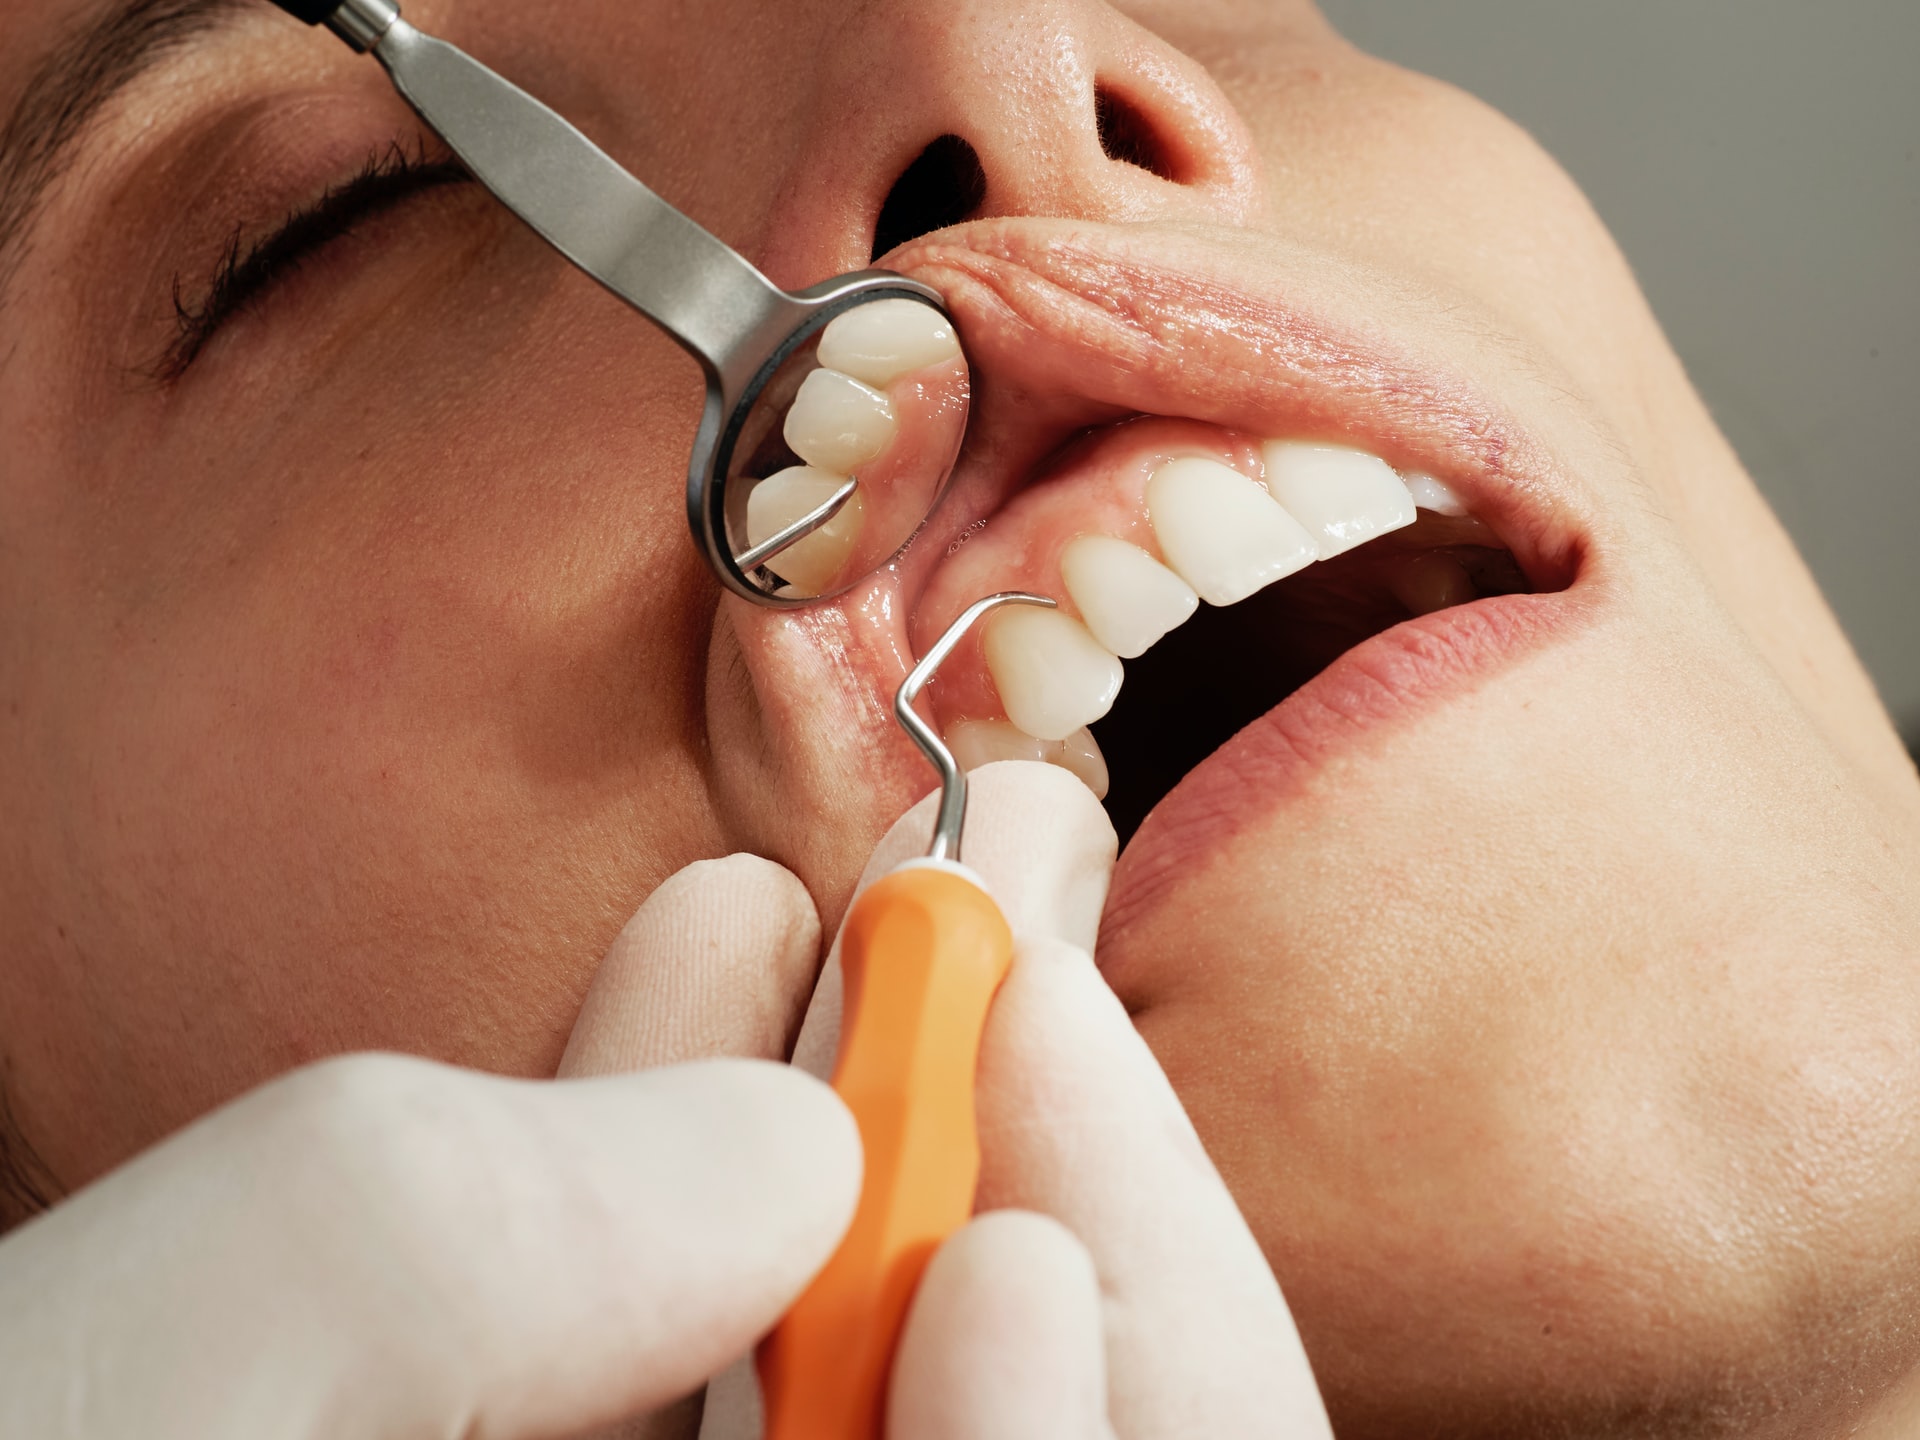 How to choose a dental center